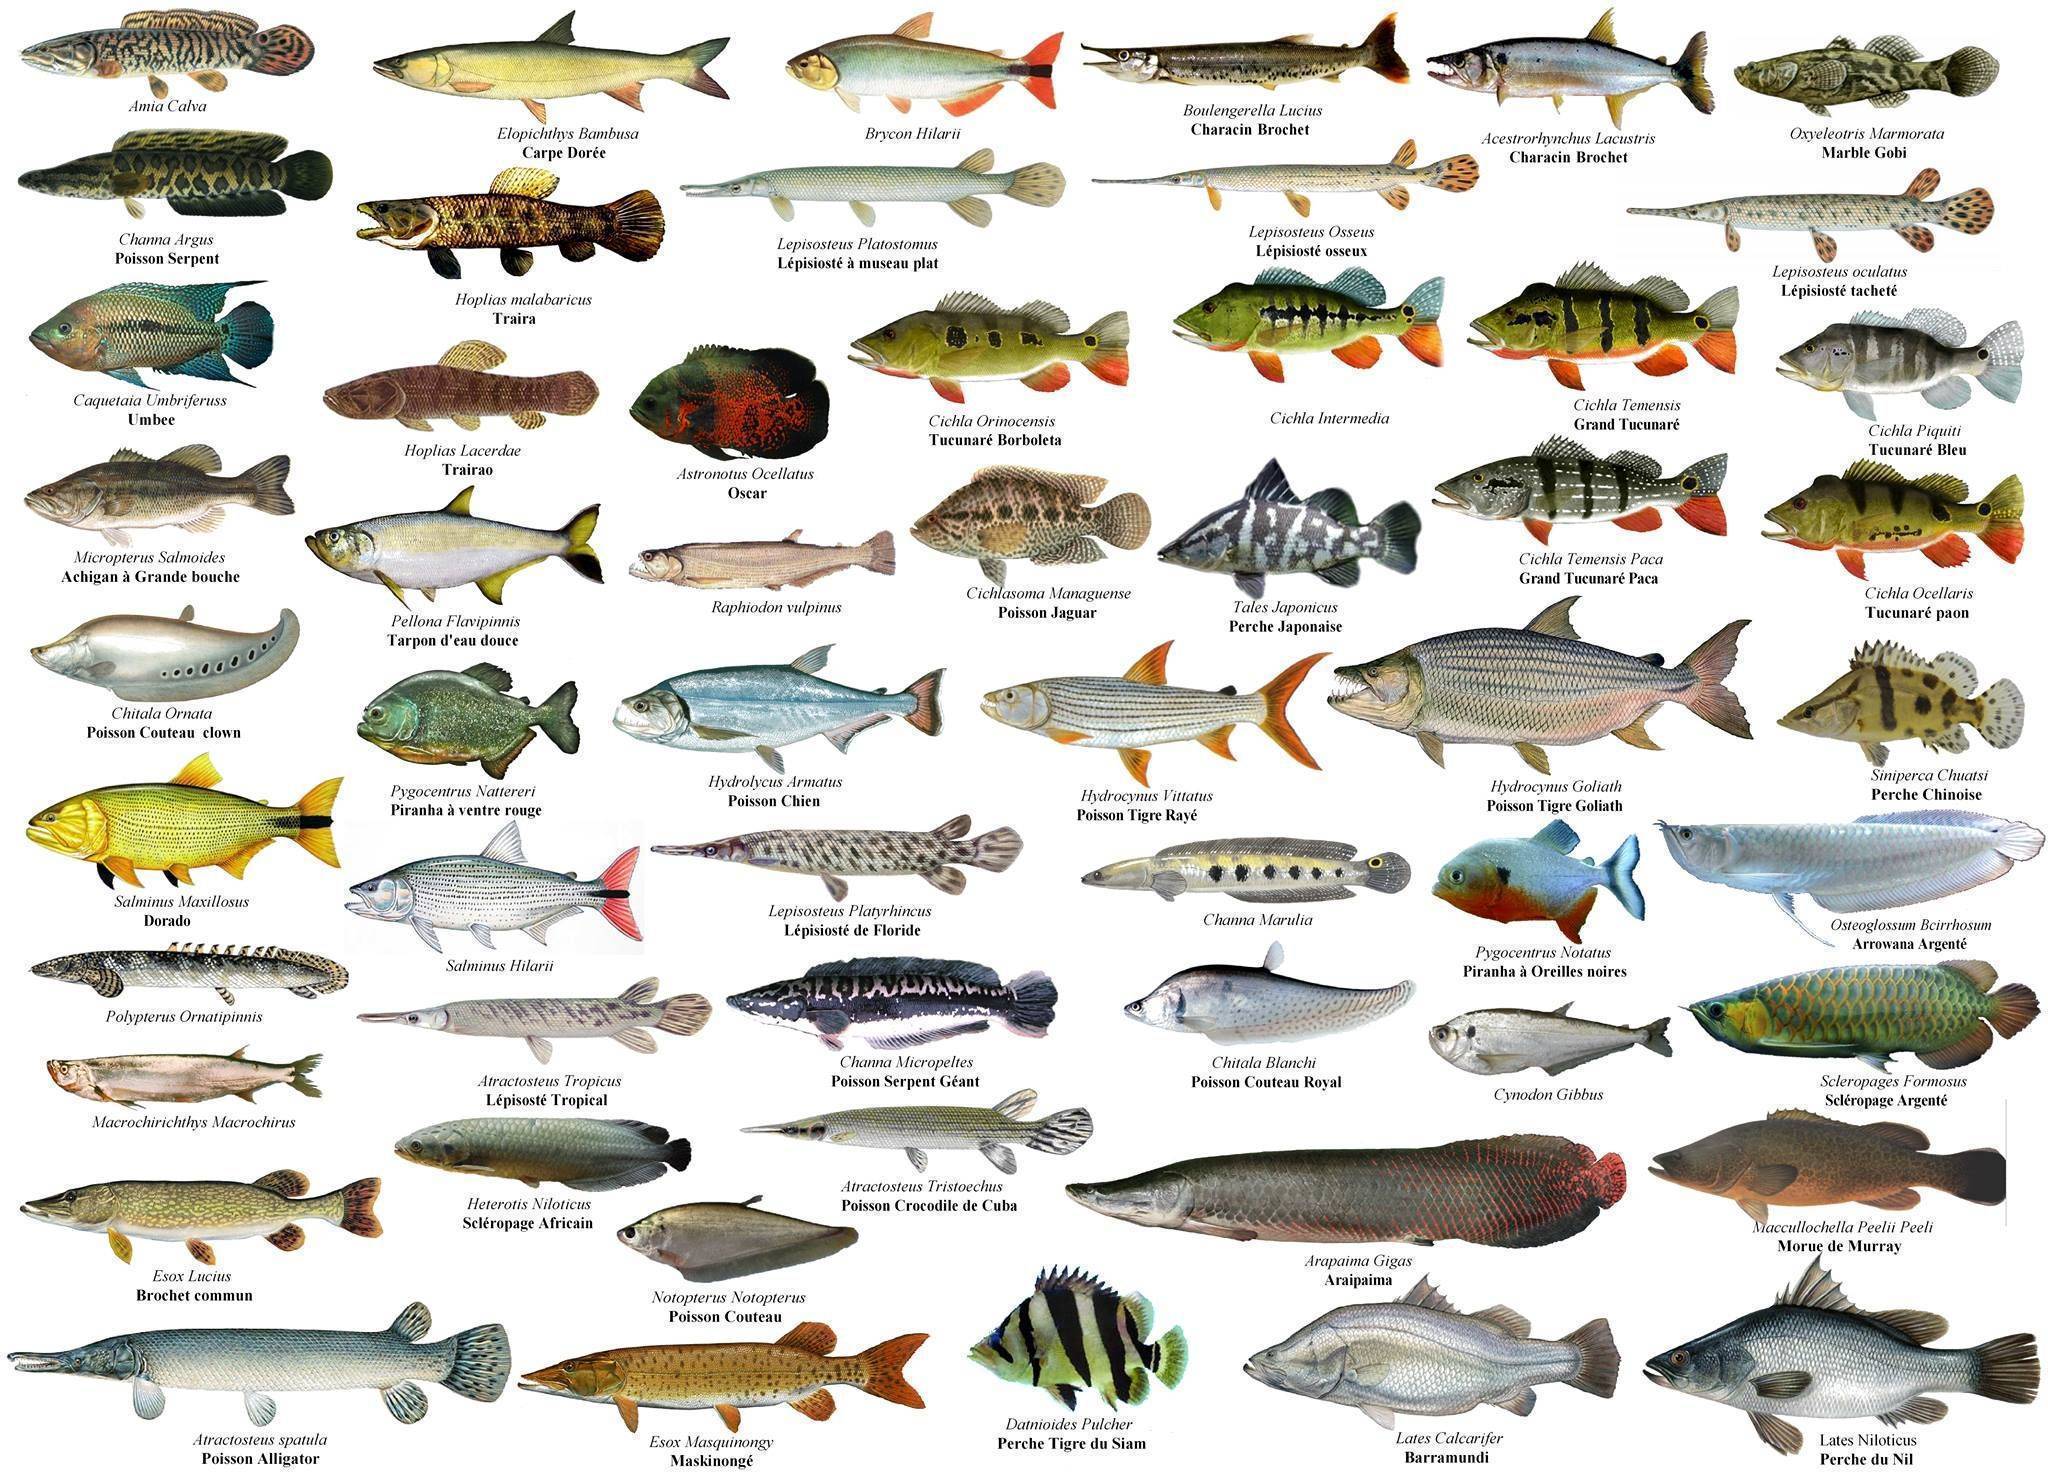 Пресноводные виды рыб россии - названия, фото и краткое описание — природа мира